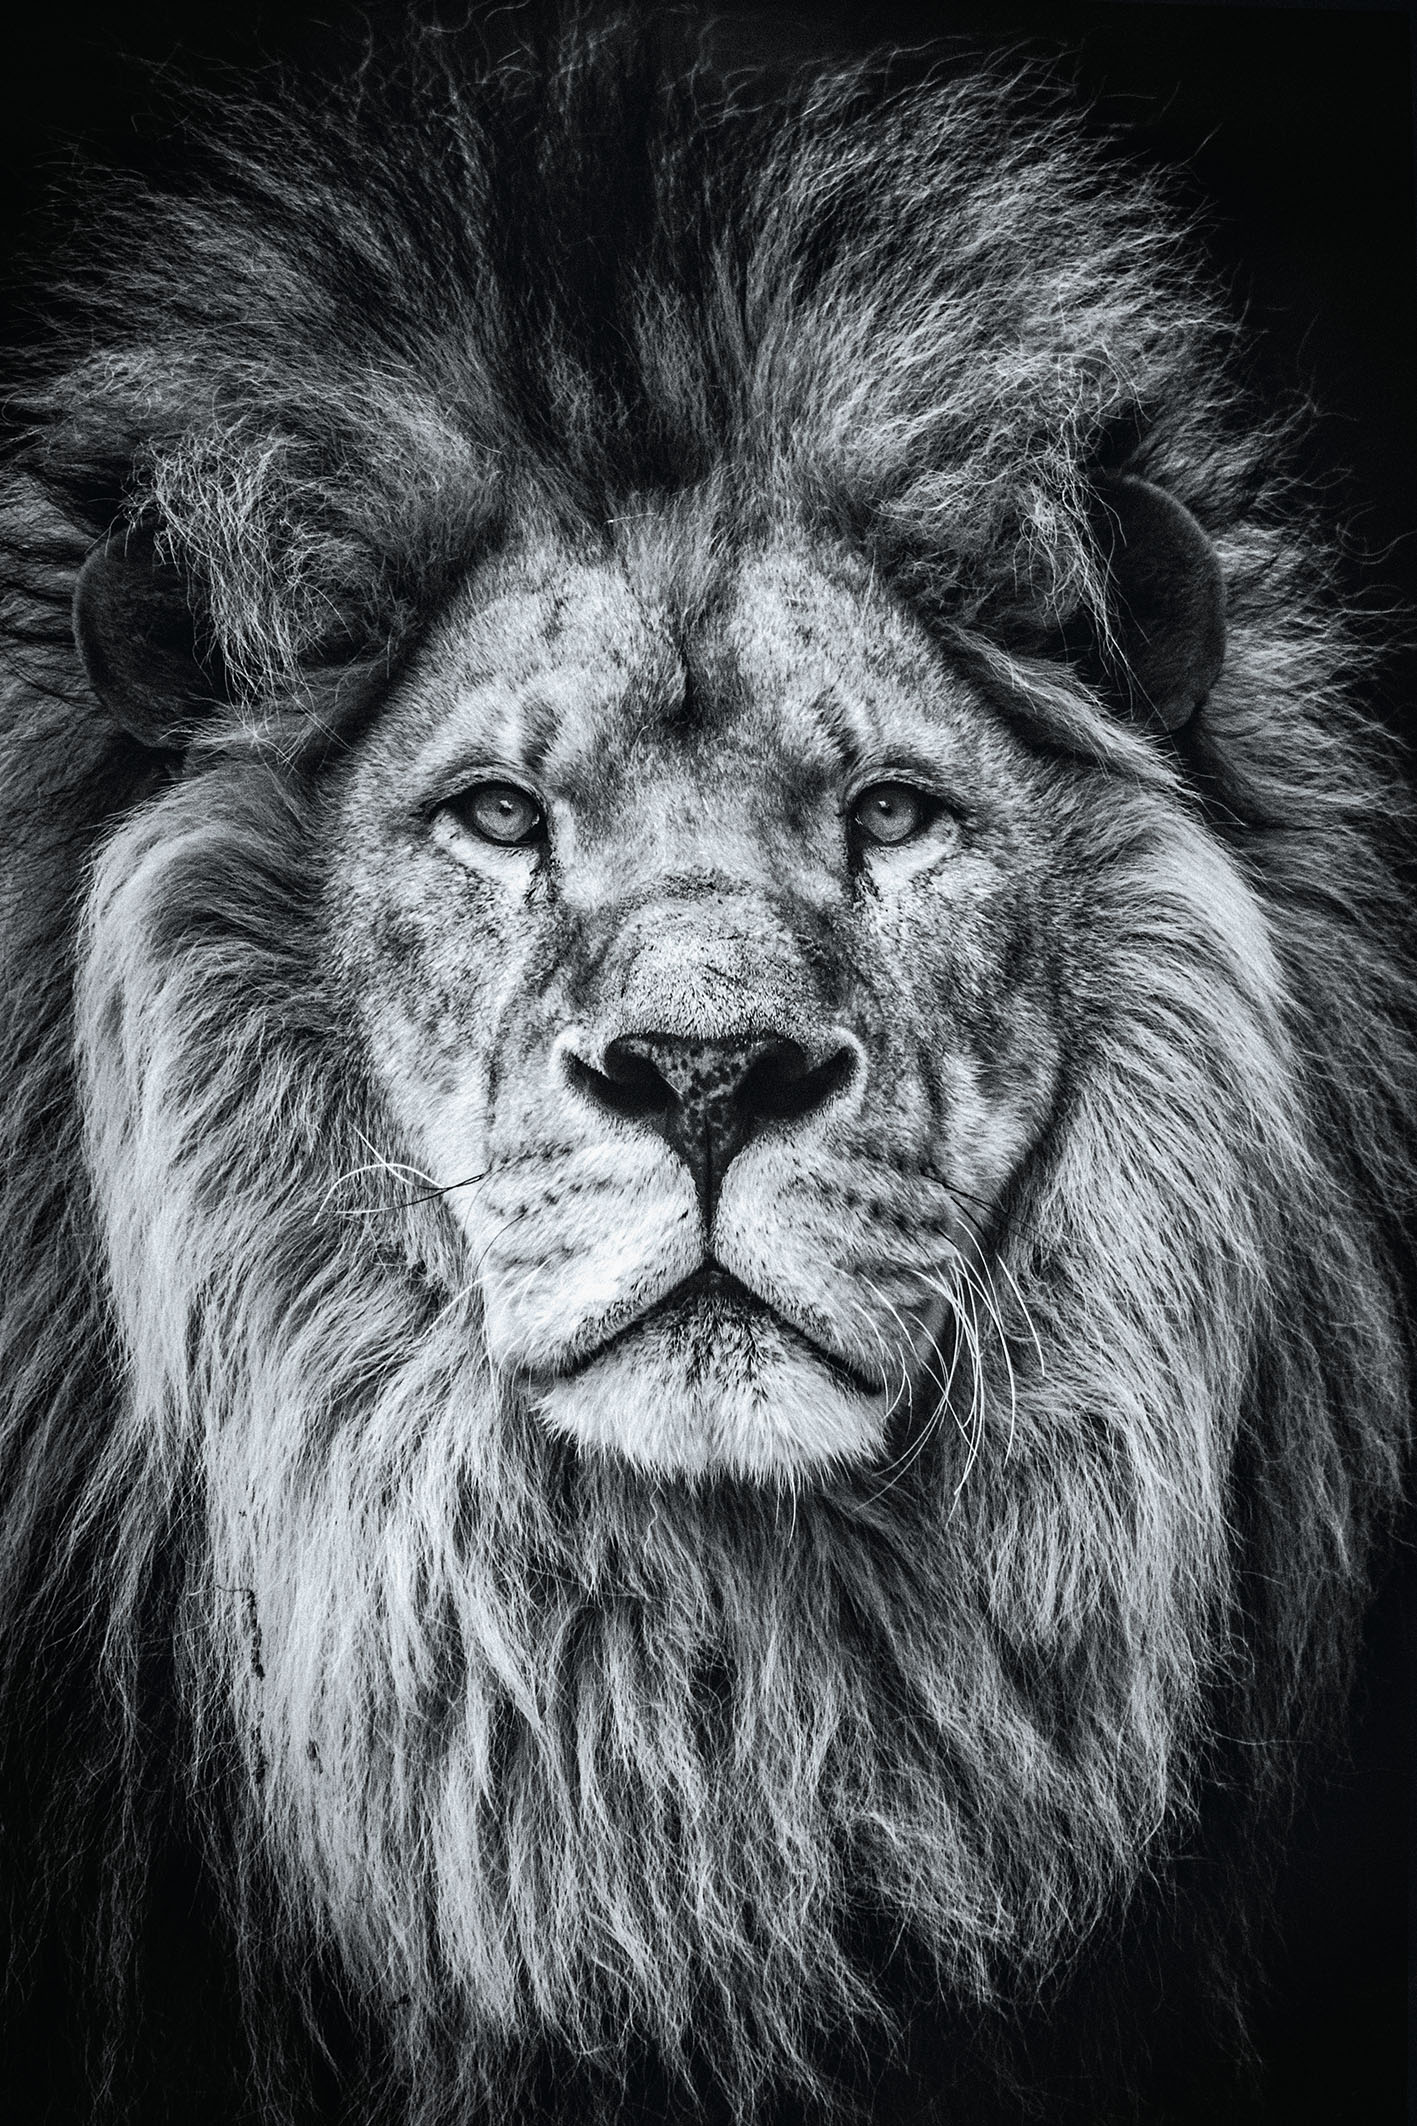 Kaufen Sie Schwarz-weiß Fotografie Poster Löwe - 30 x 40 cm zu  Großhandelspreisen